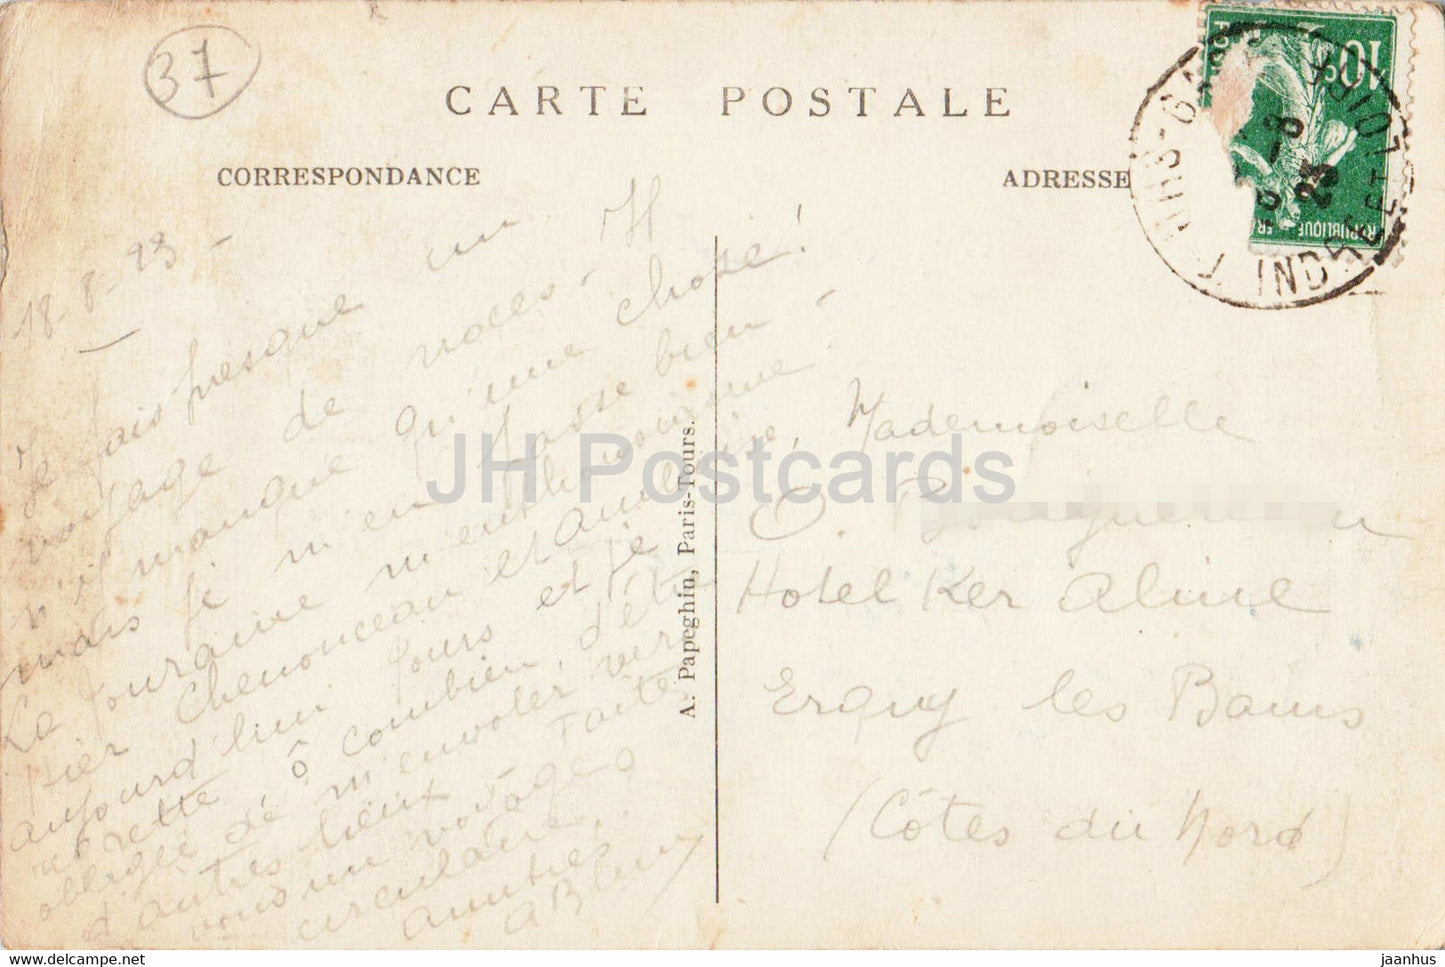 Tours - Vue Generale sur la Loire le Pont de Pierre - La Cathedrale St Gatien - 1 - old postcard - 1923 - France - used